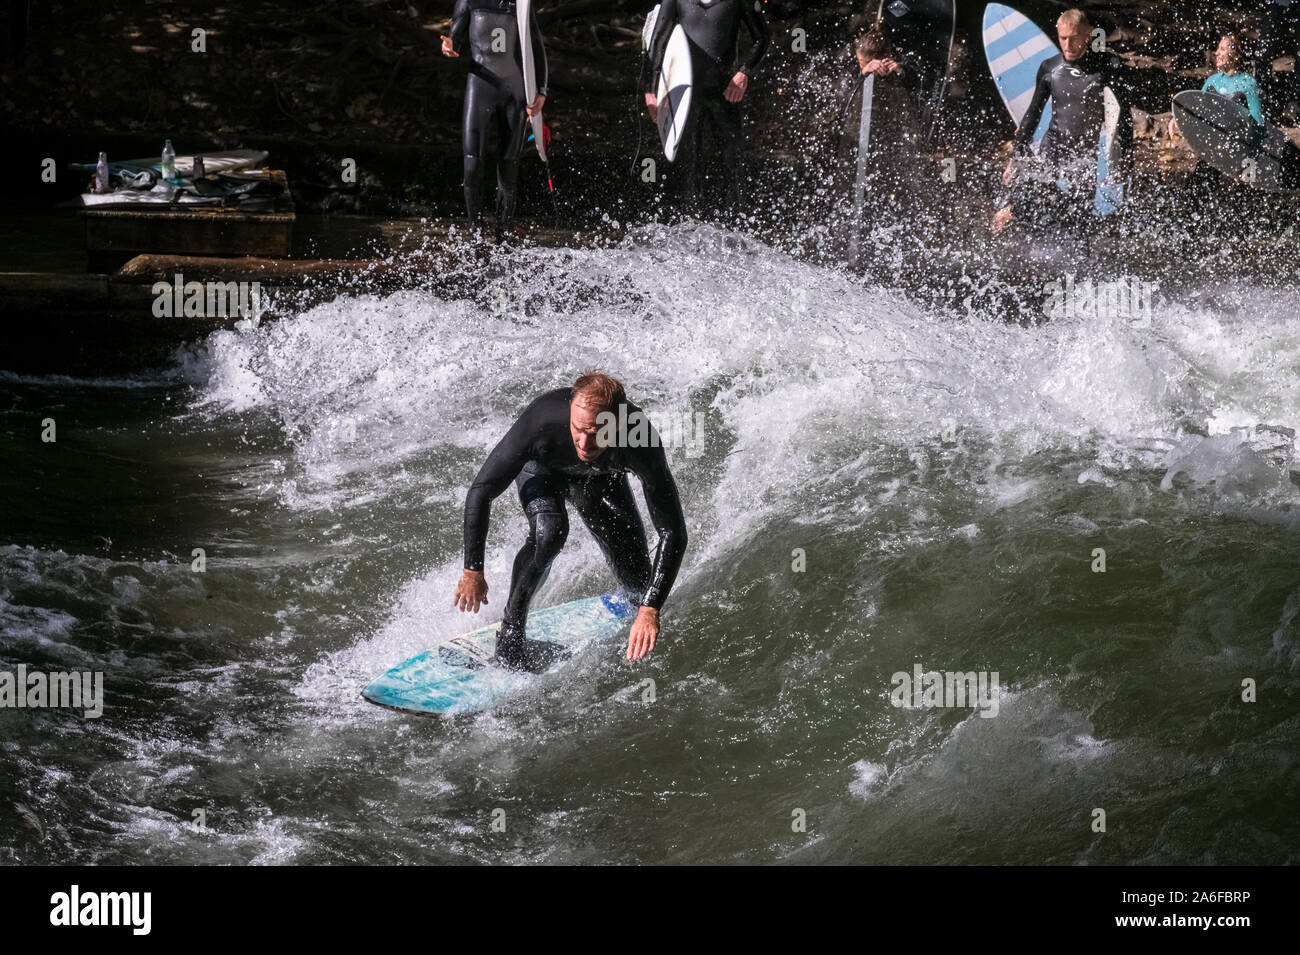 Ein Surfer reitet der künstlichen Welle bei Eisbachwelle, München, Deutschland. Teil einer künstlichen Fluss, der Spot ist für einen jährlichen surfen Wettbewerb verwendet. Stockfoto